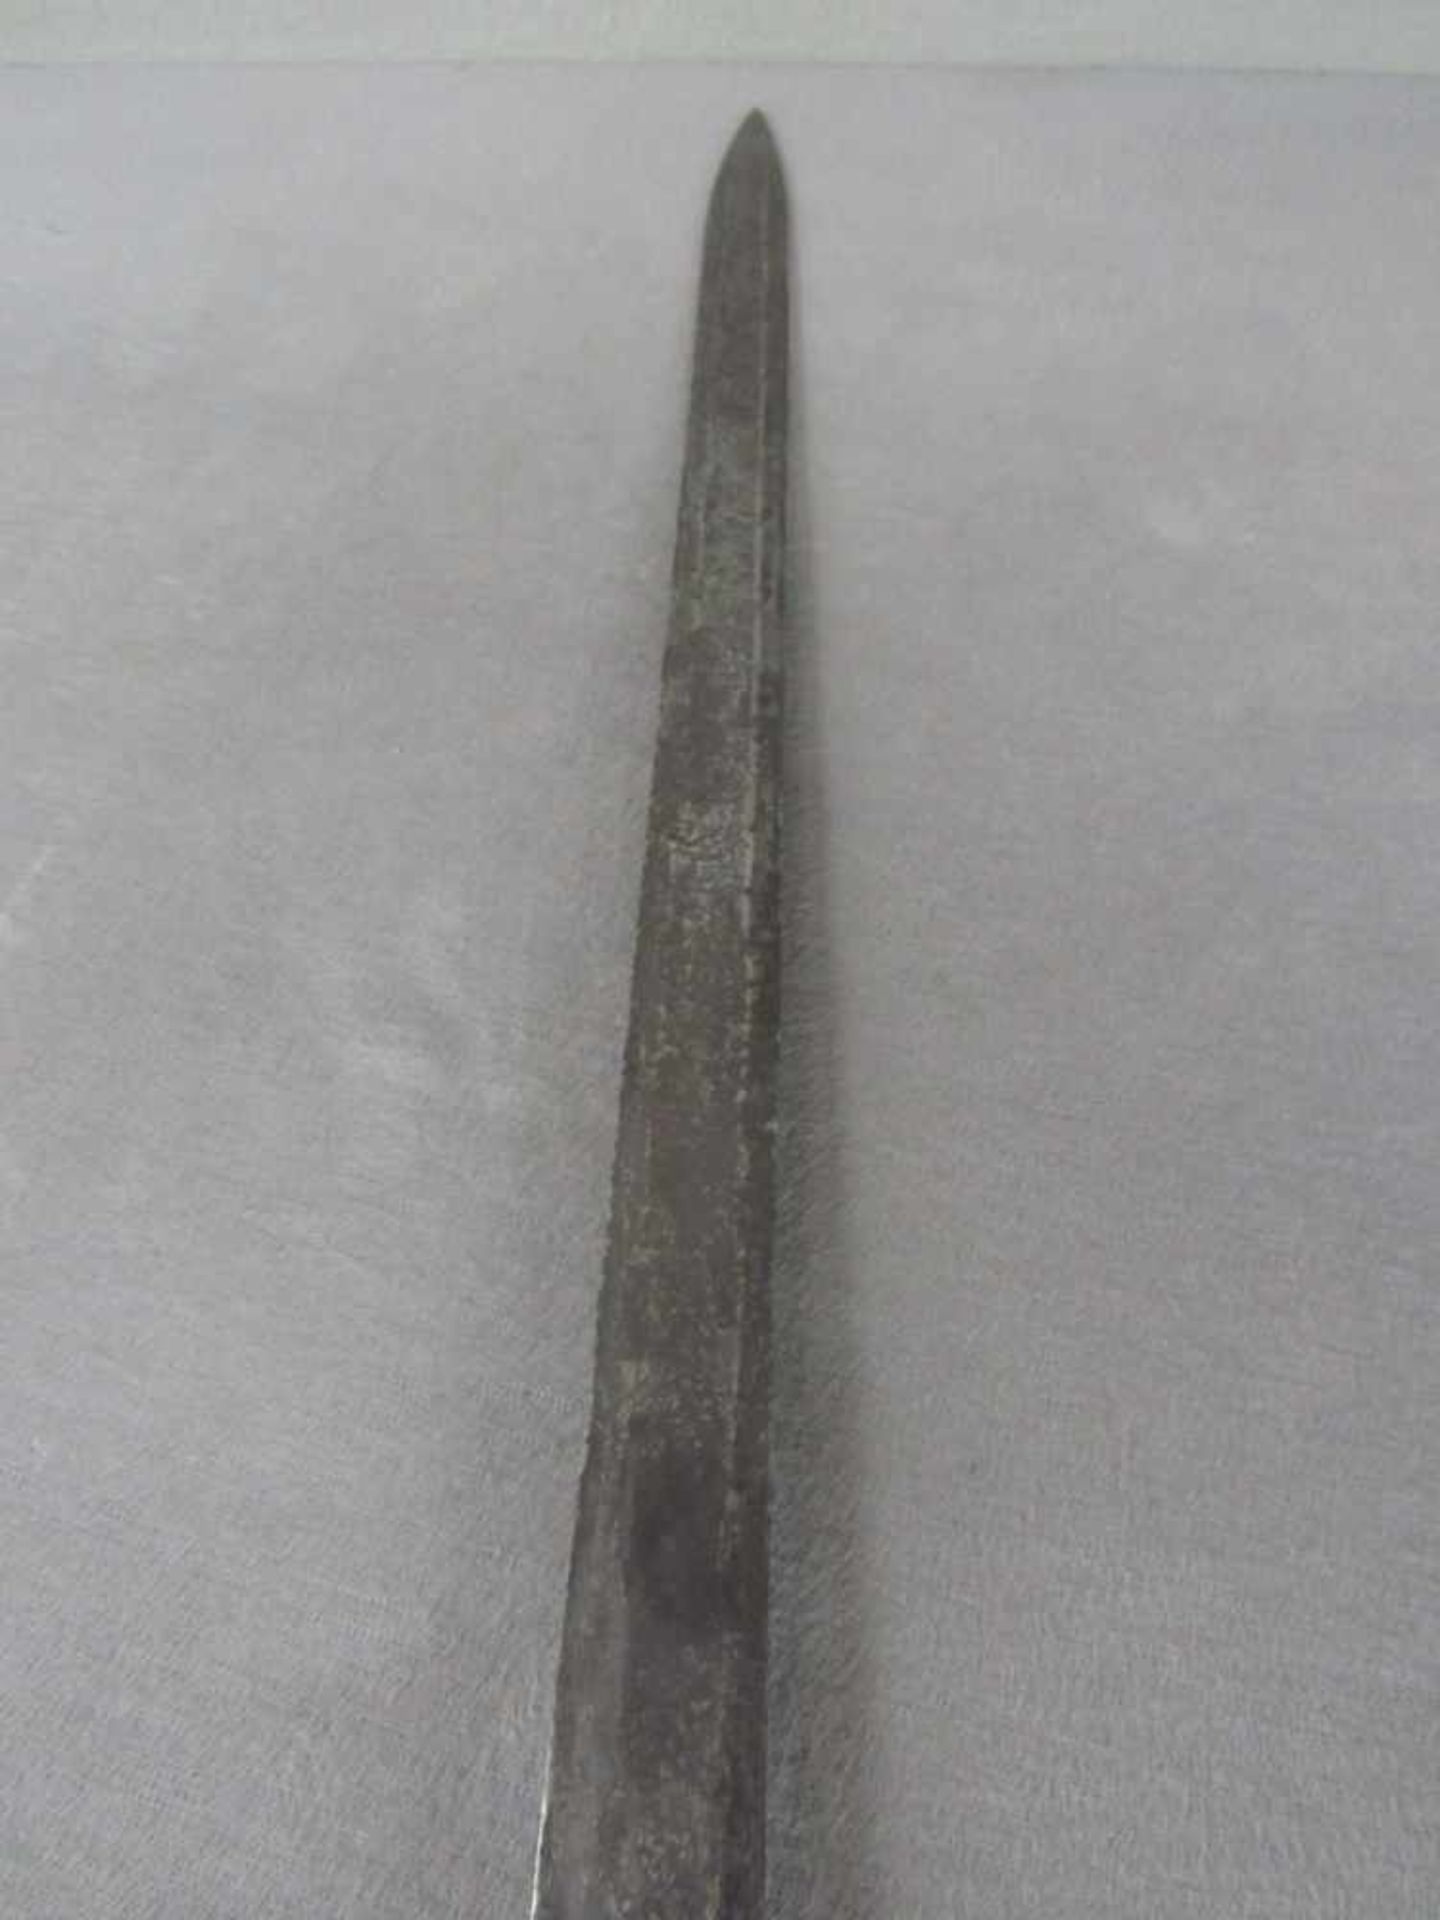 Asiatisches Schwert leicht rostnarbig 73cm lang - Bild 5 aus 5